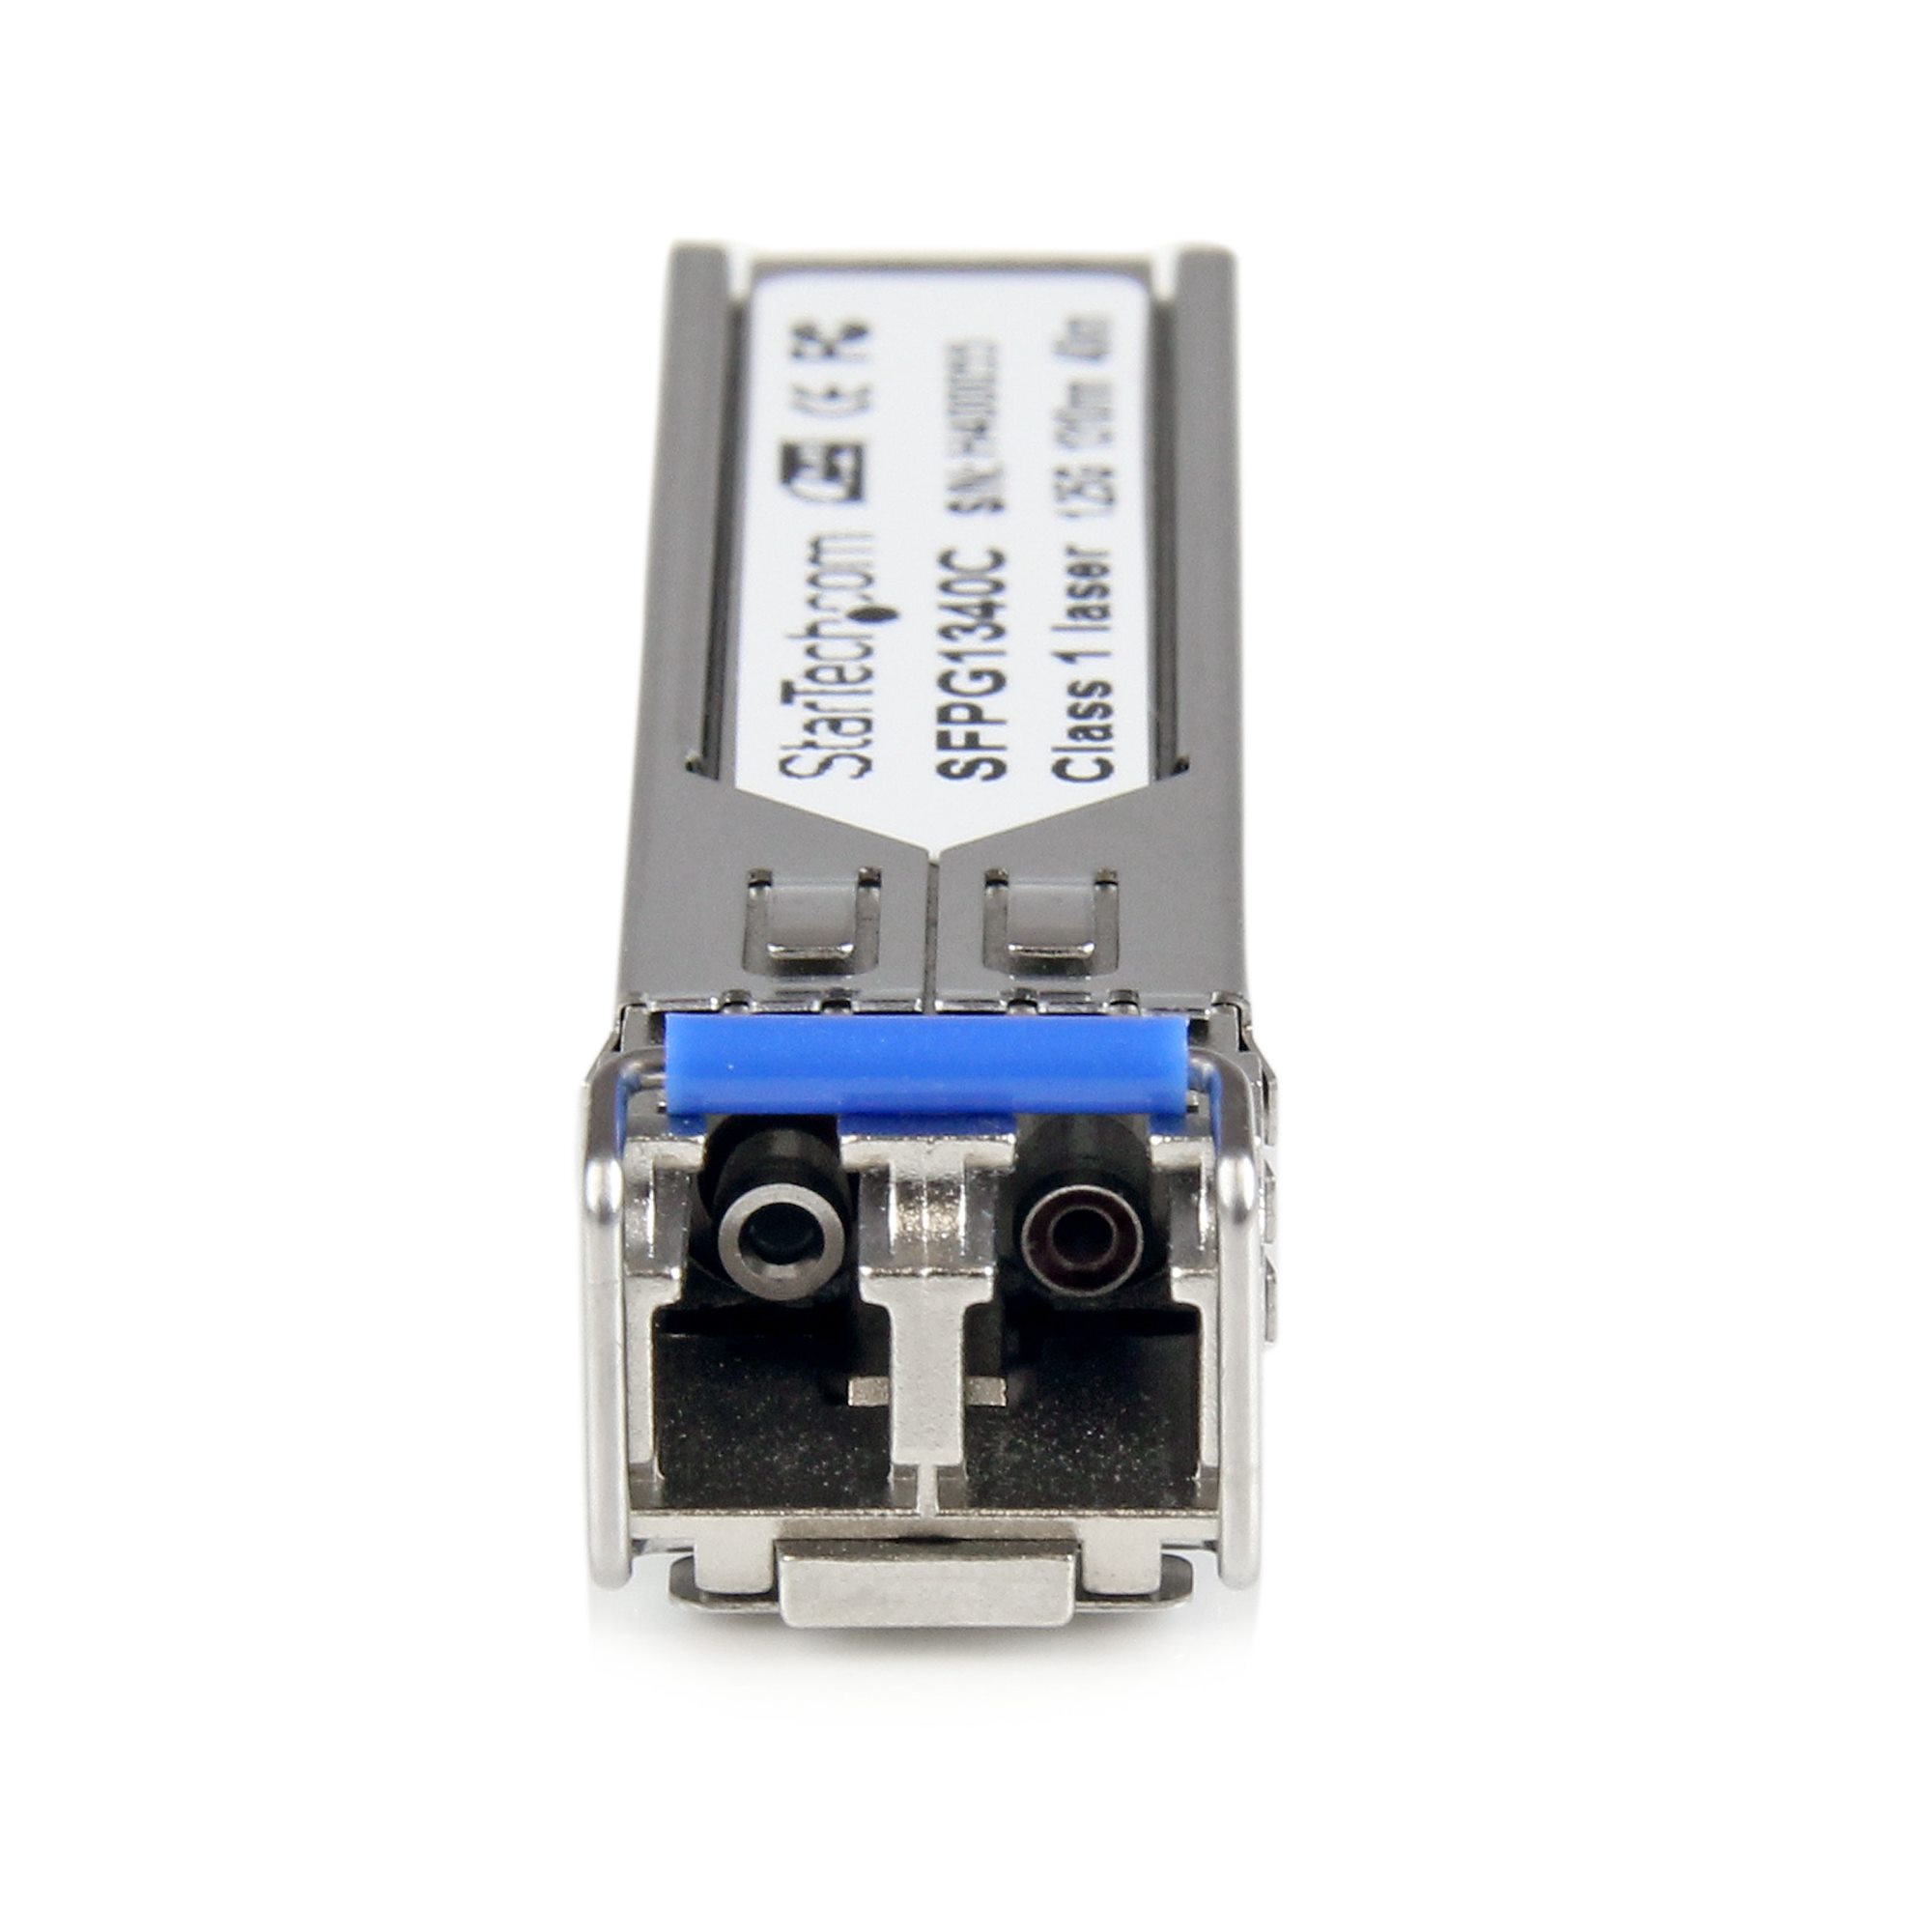 Switch (Fibre Optique), Convertisseur de port fibre SC male en port fibre  ST fem, Module fibre MiniGBiC SFP - Multimode LC 500m, Module fibre  MiniGBiC SFP - MonoMode 10Km LC, Dexlan switch Gigabit 4 ports + 1 port SFP  MiniGBiC, WebSmart Switch